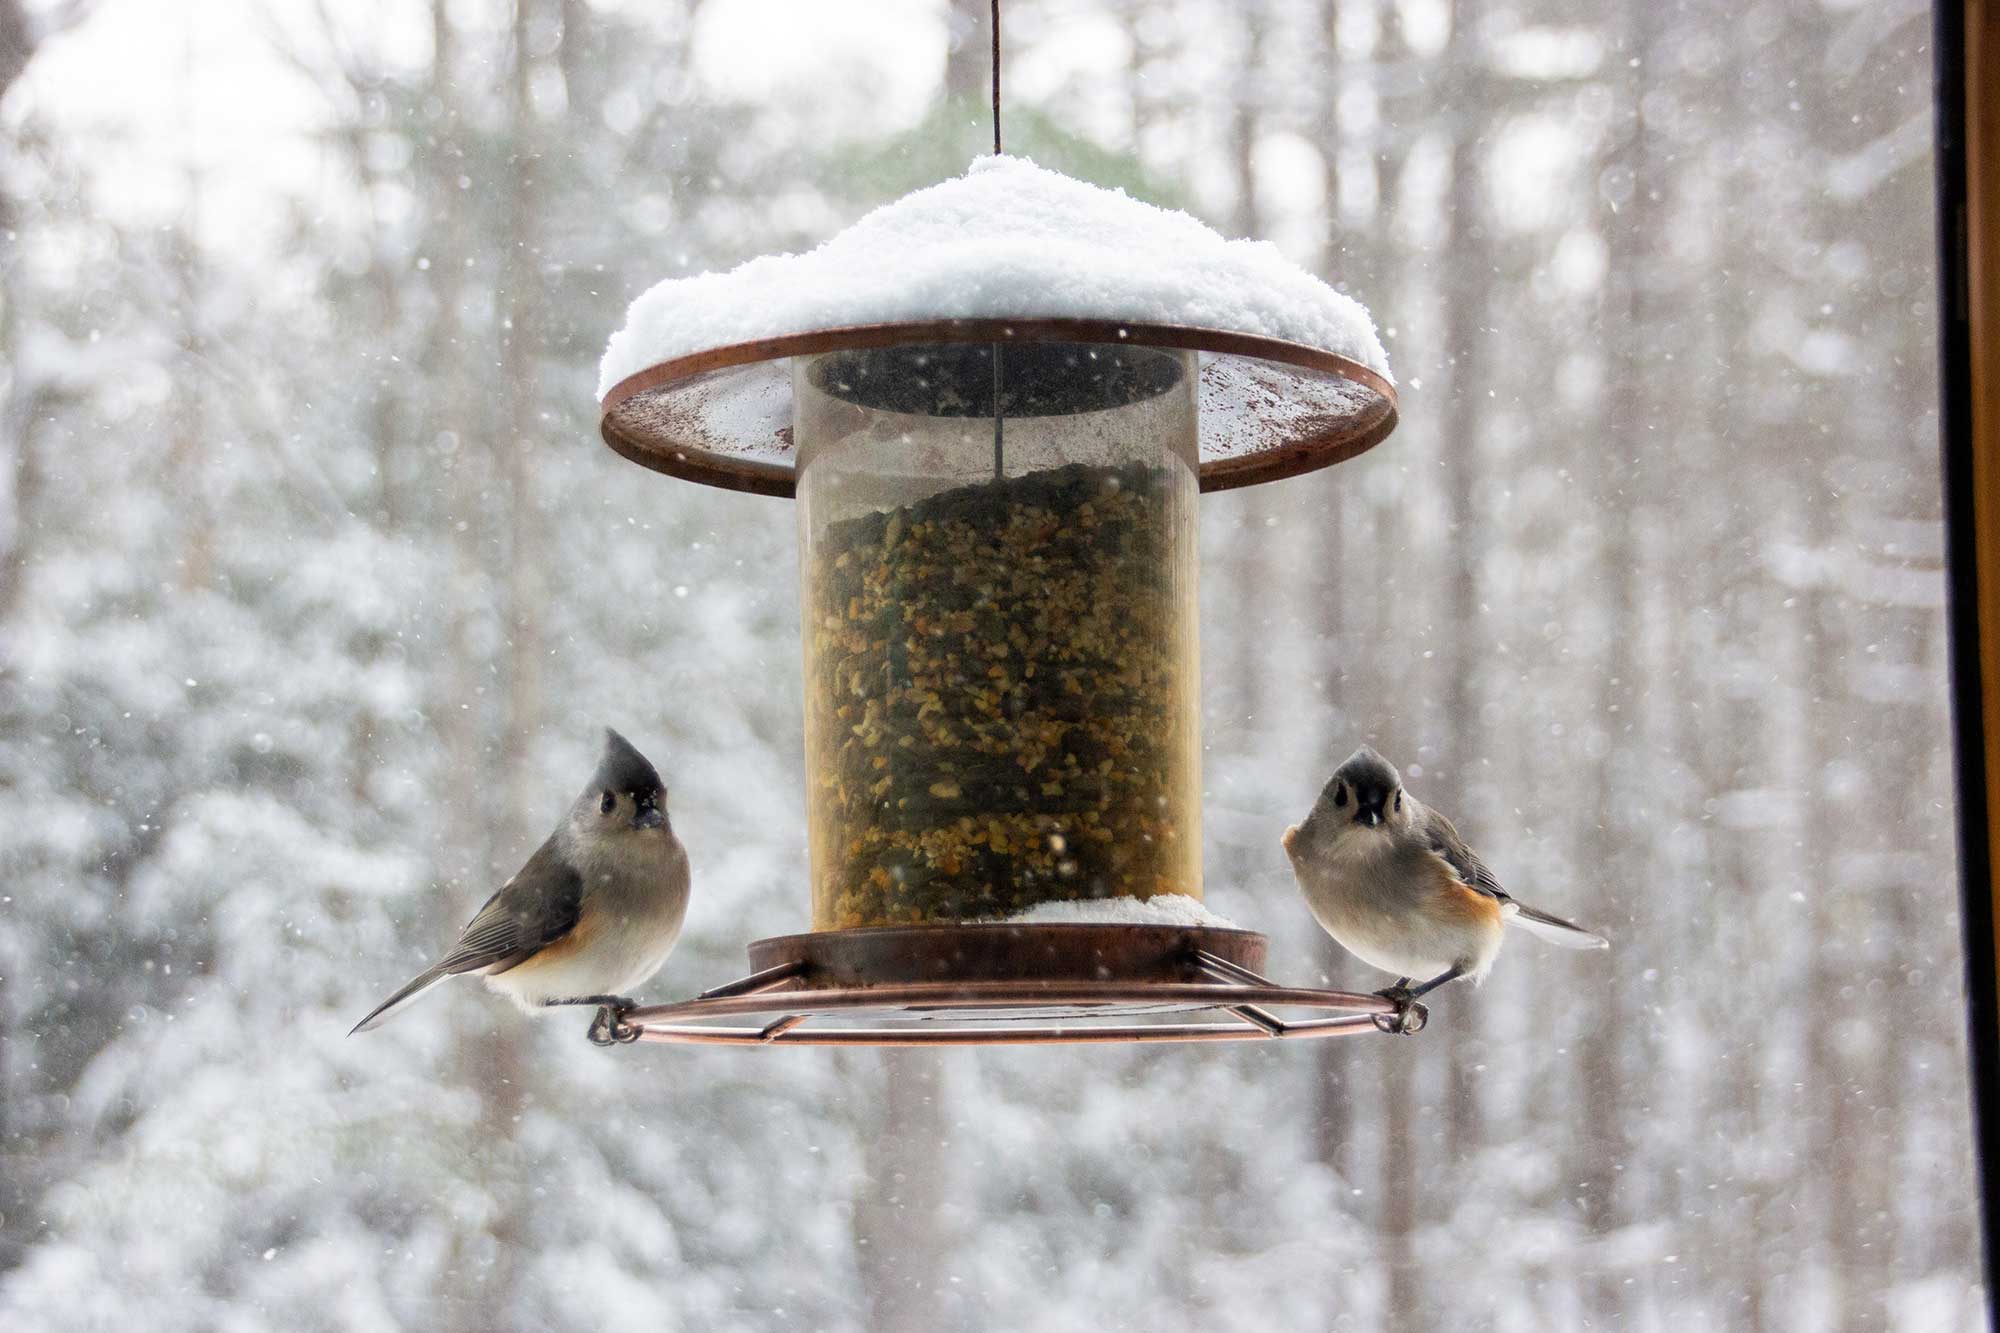 Birds at a bird feeder eating the best bird seed